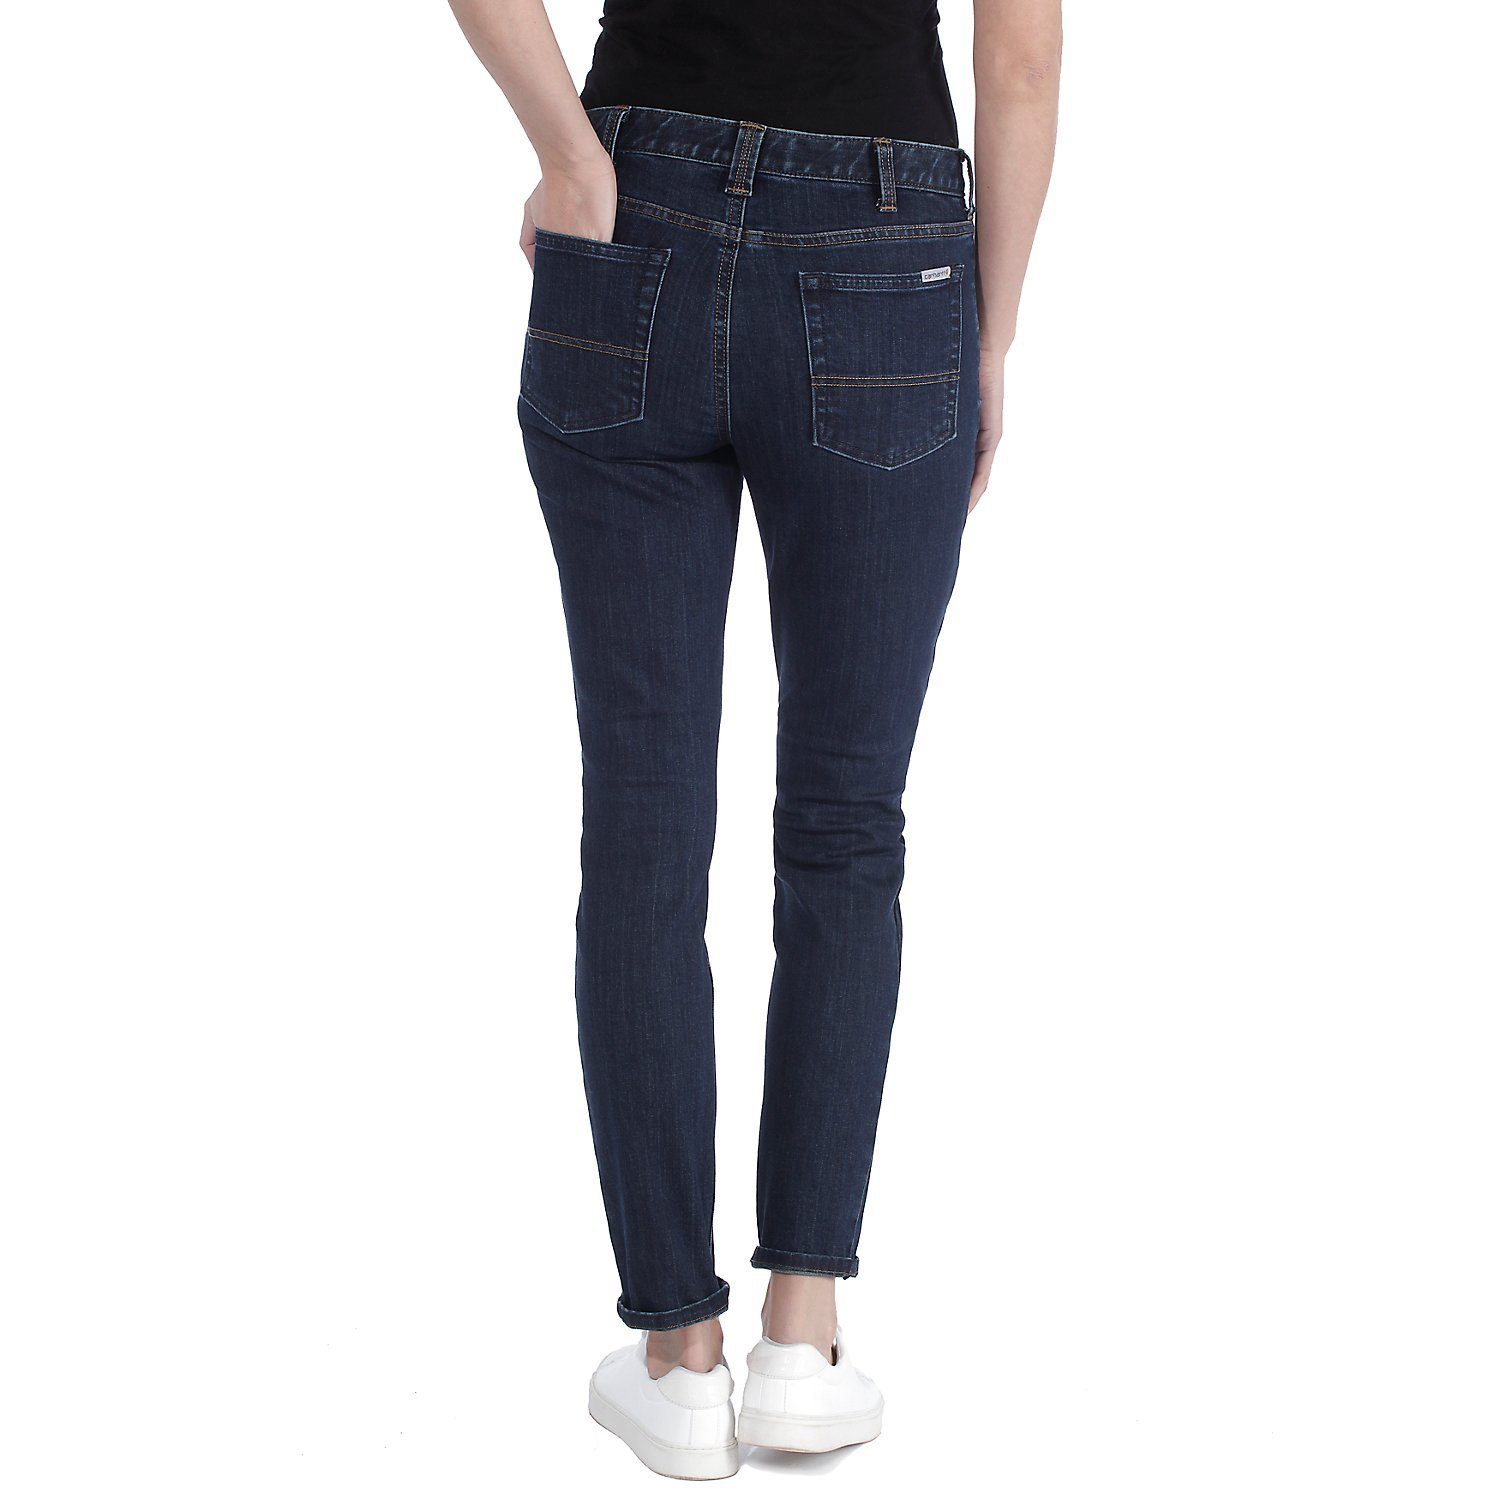 Slim Jeans Damen, Midnight Carhartt Skinny-fit-Jeans für Skinny Fit Sky Slim Fit,